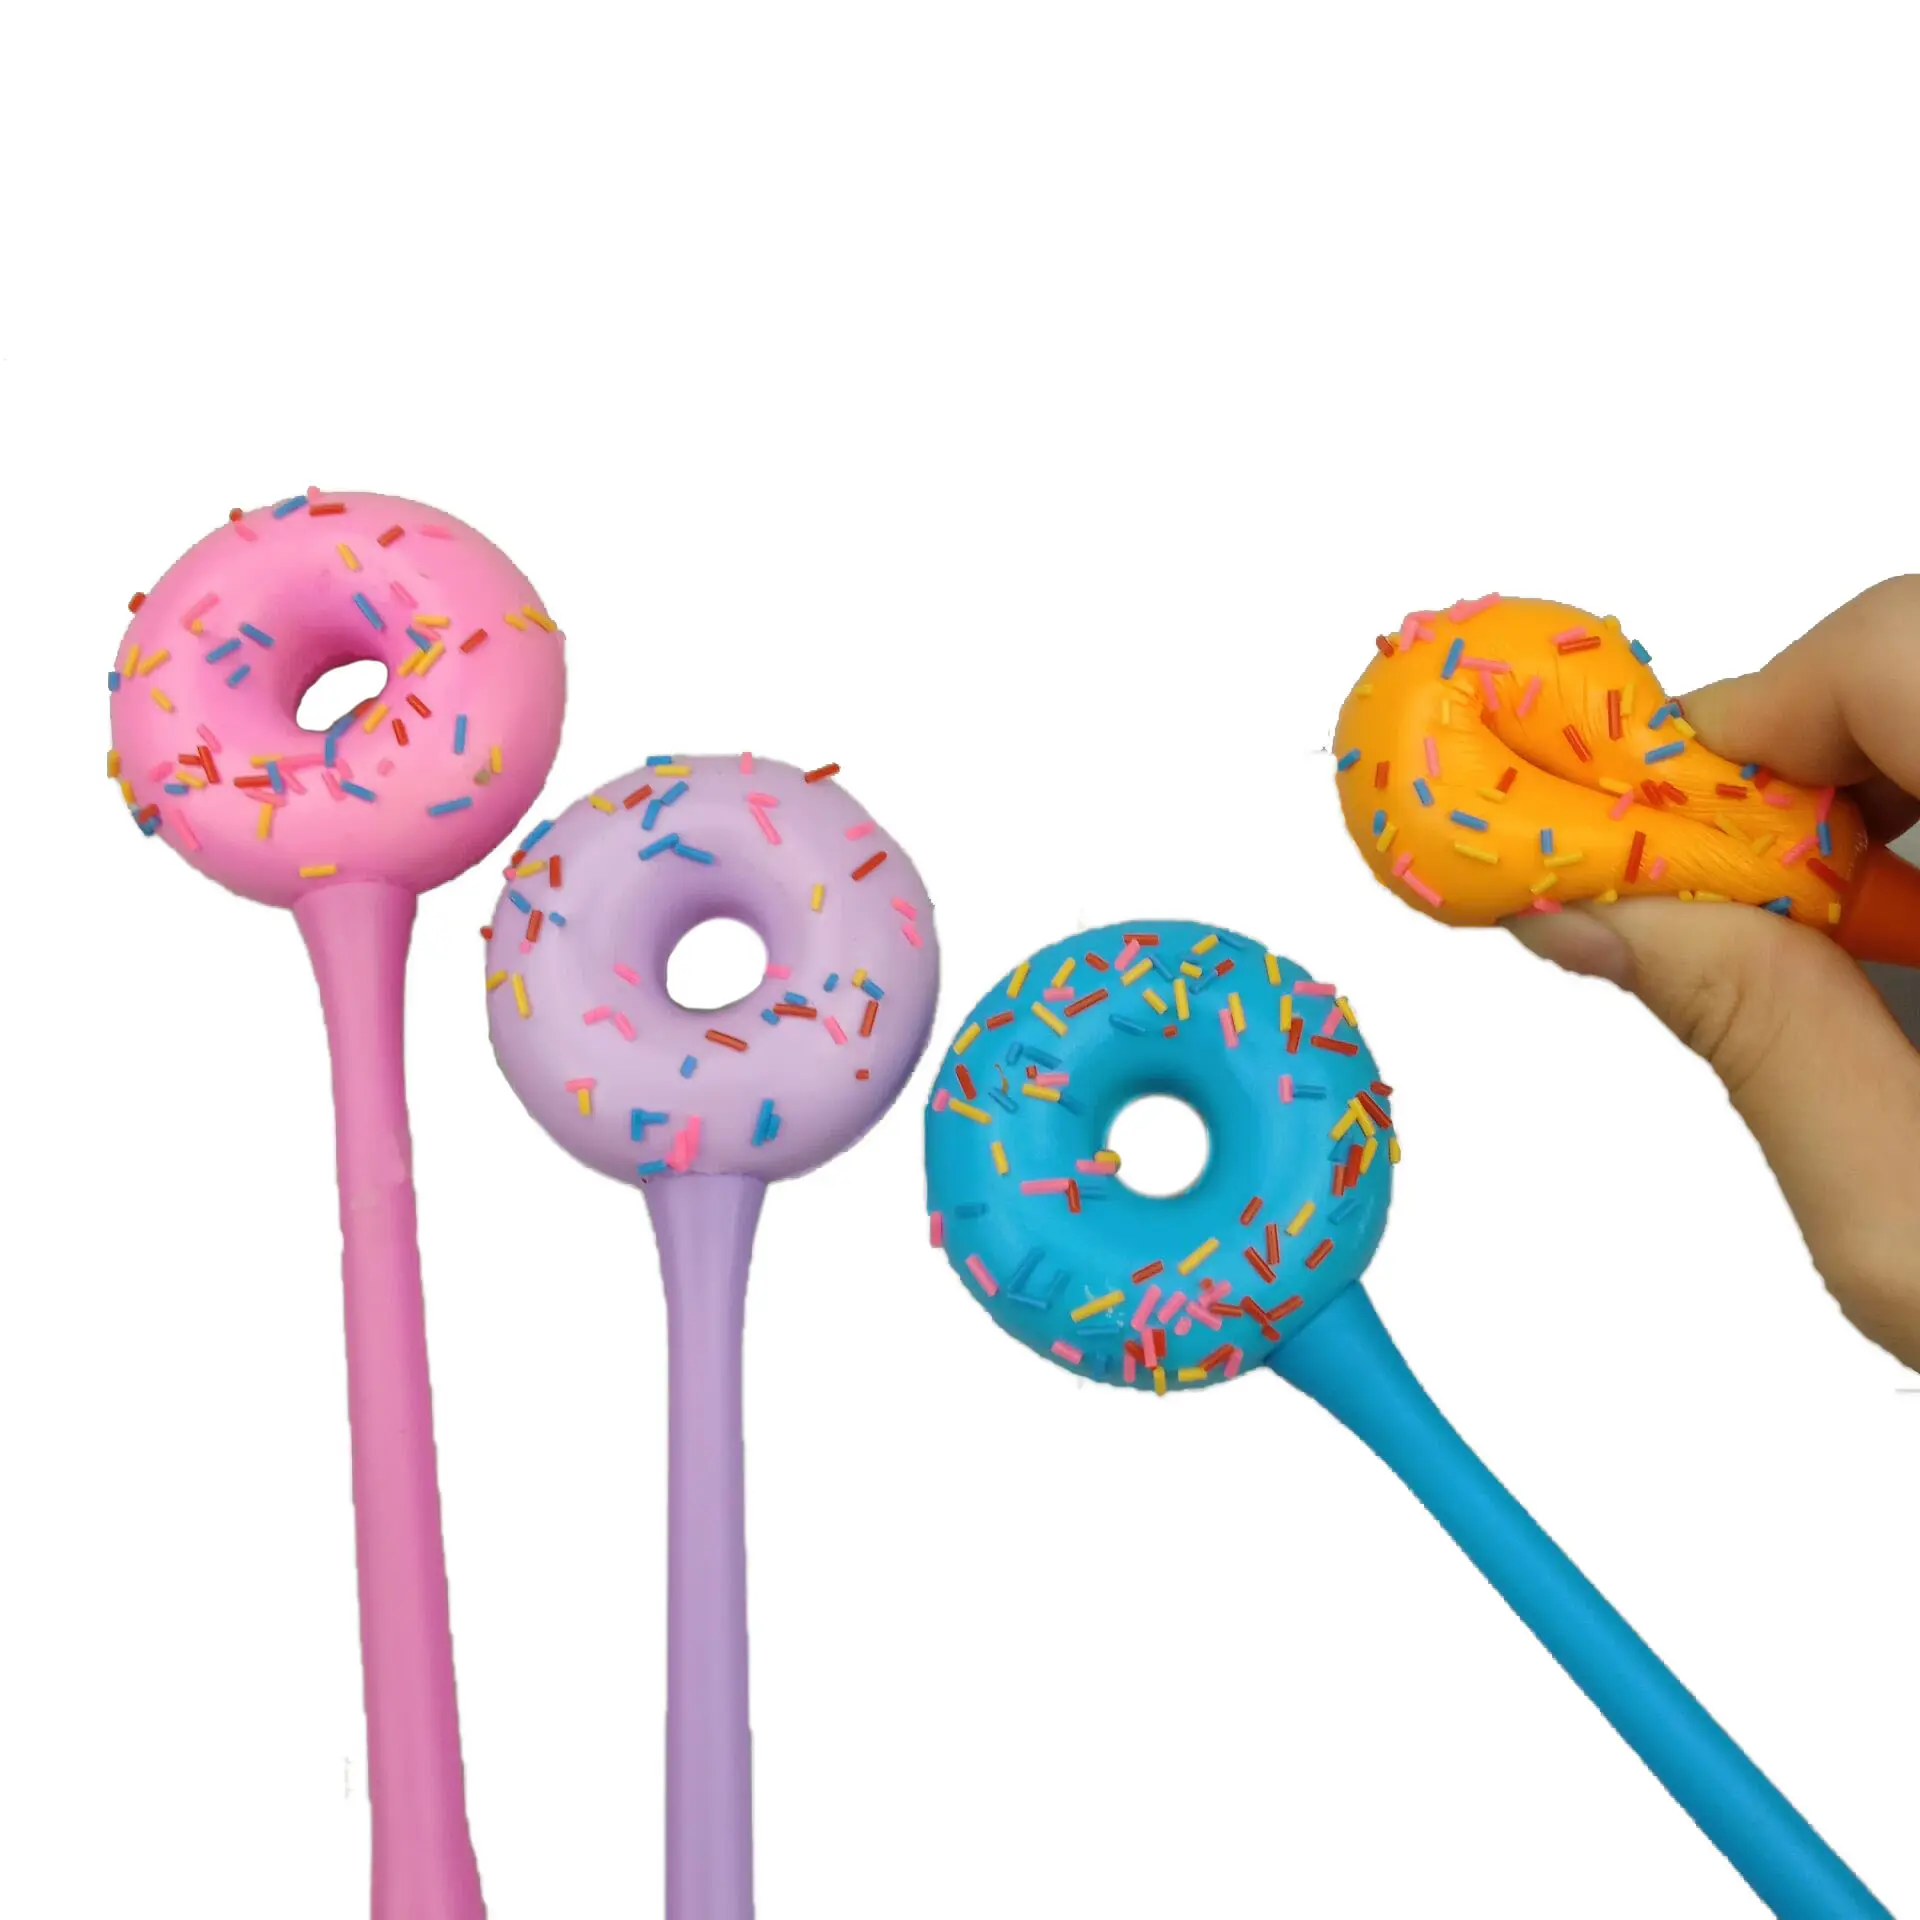 थोक कस्टम स्वच्छ और अच्छी गुणवत्ता वाली नवीनता फैंसी स्क्विशी डोनट बच्चों के लिए रंगीन pens को राहत देते हैं।